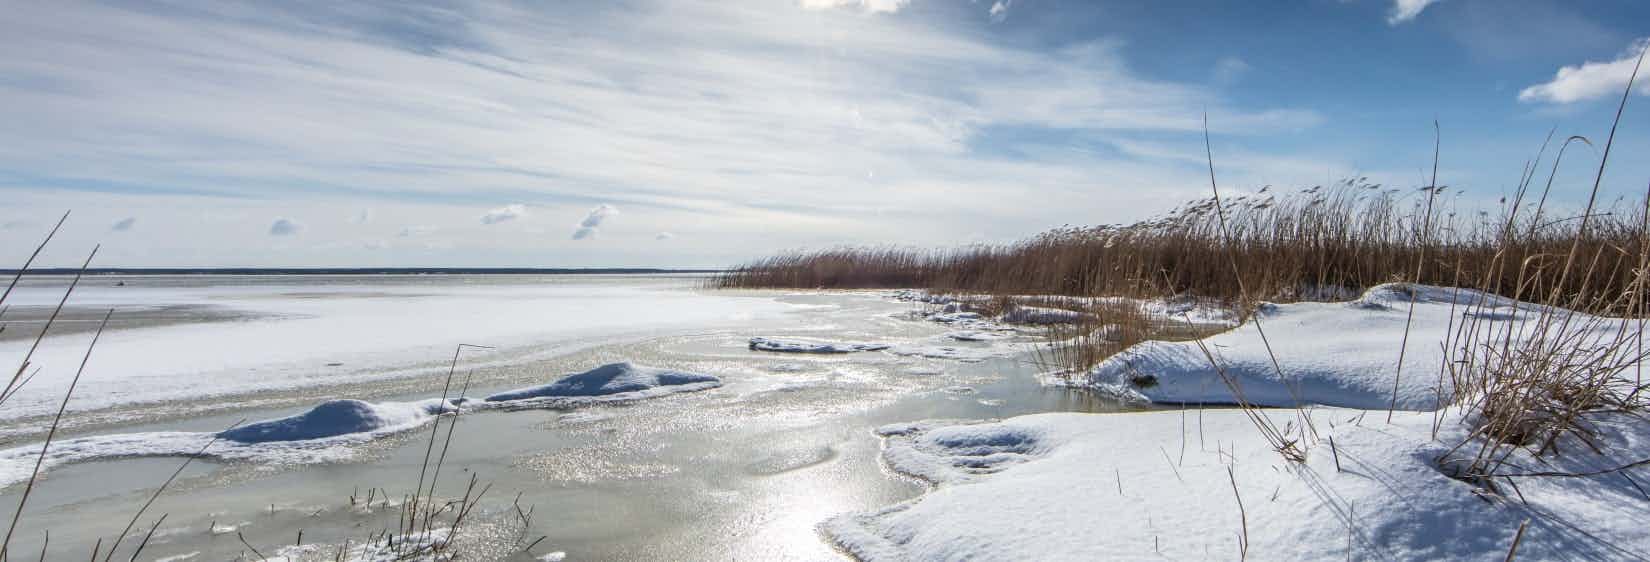 Wintercamping an der Ostsee